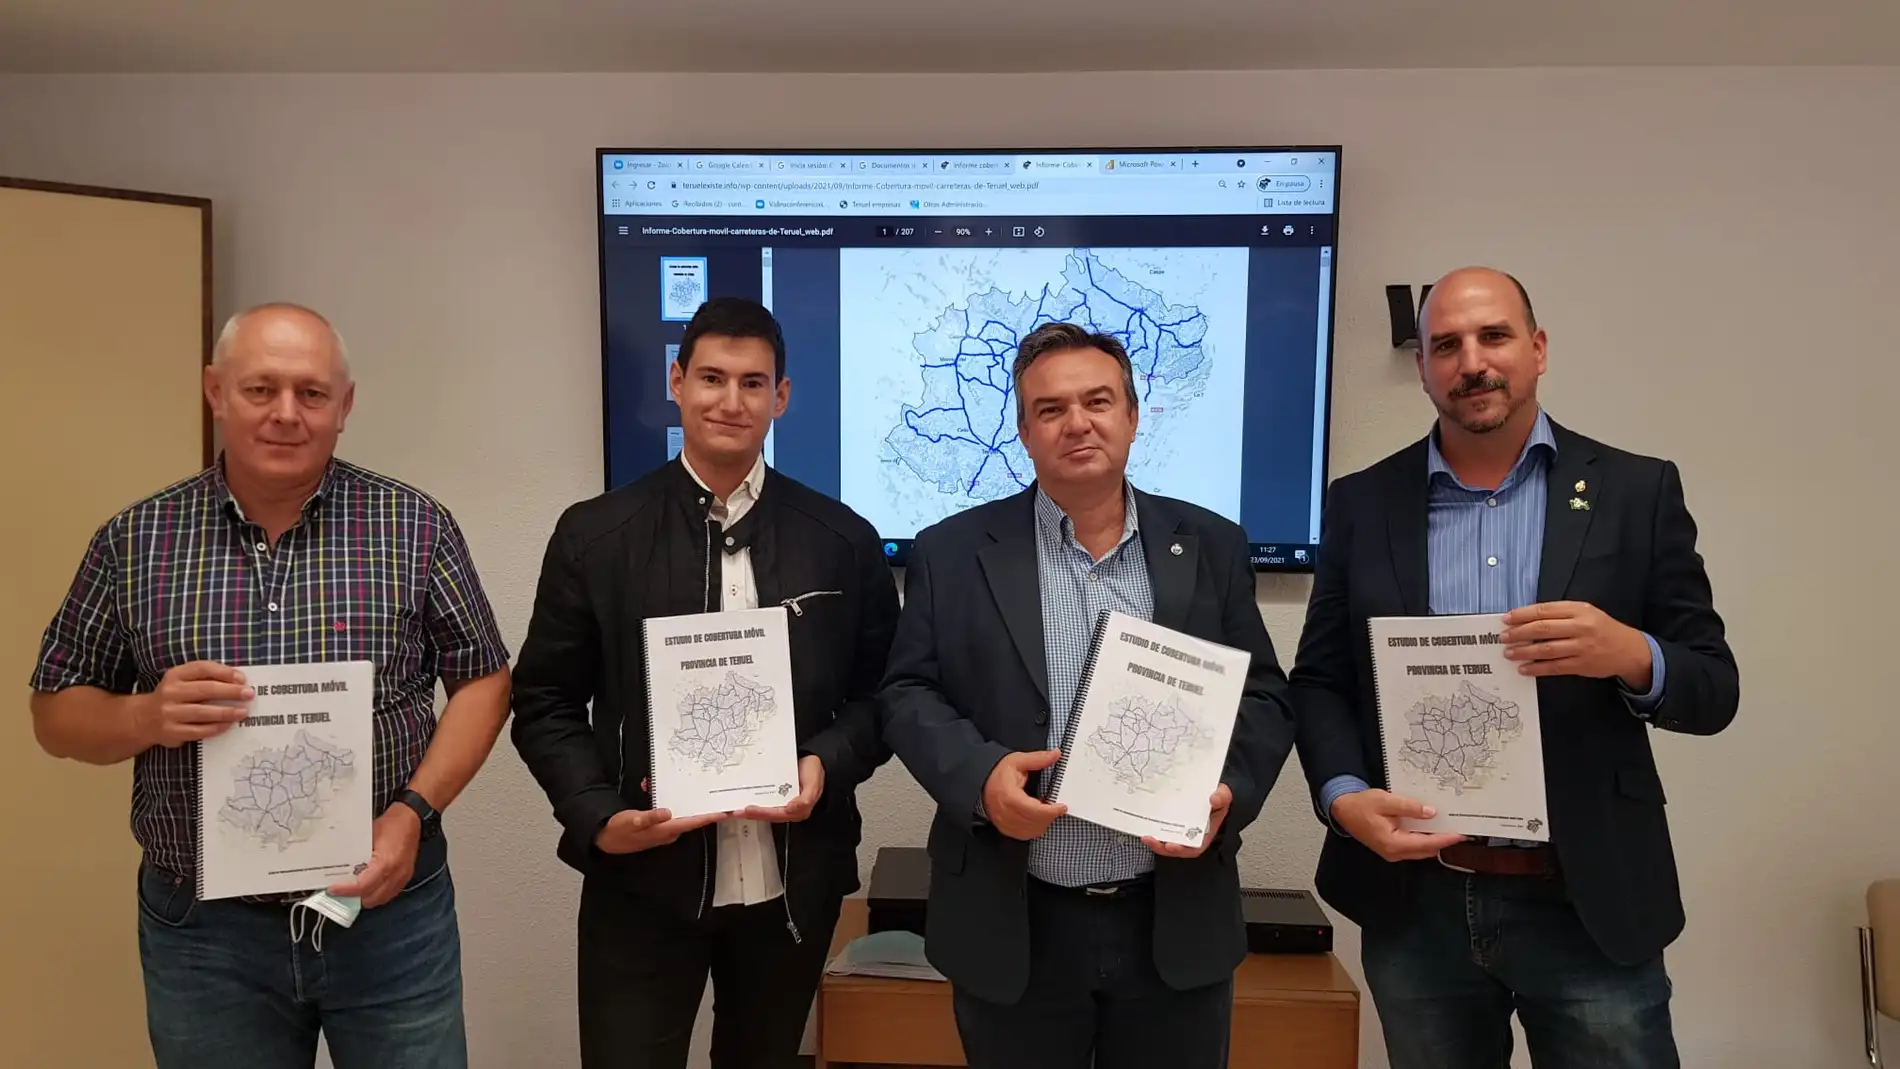 Representantes del movimiento ciudadano y del Colegio Oficial del Ingenieros en Telecomunicaciones de Aragón durante la presentación del estudio